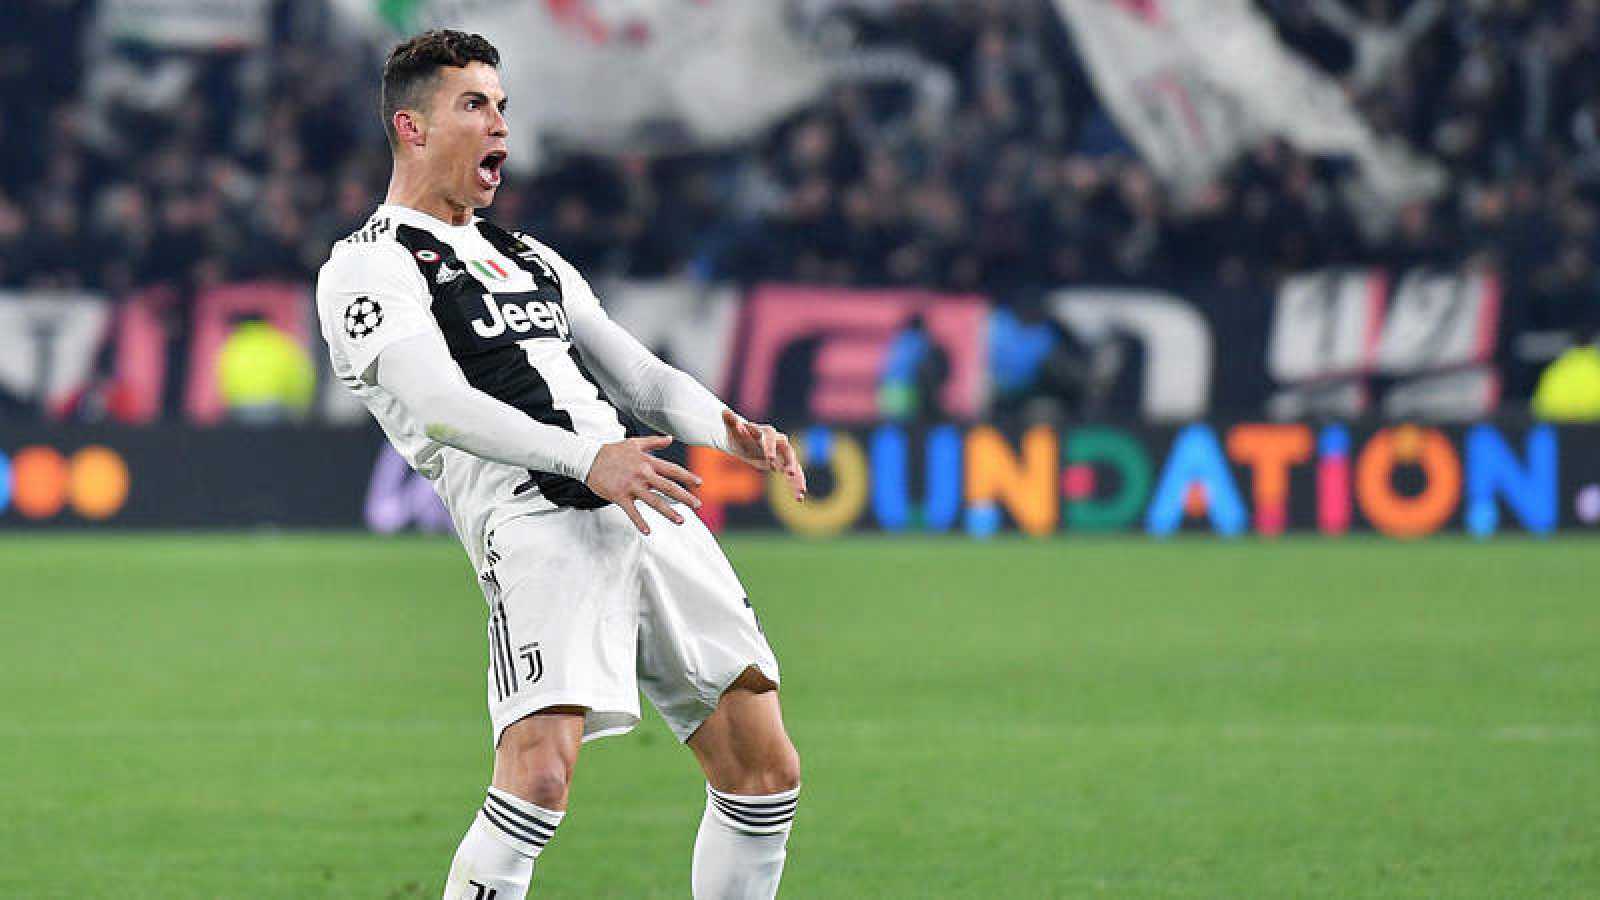 La UEFA abre expediente a Cristiano Ronaldo por sus gestos obscenos